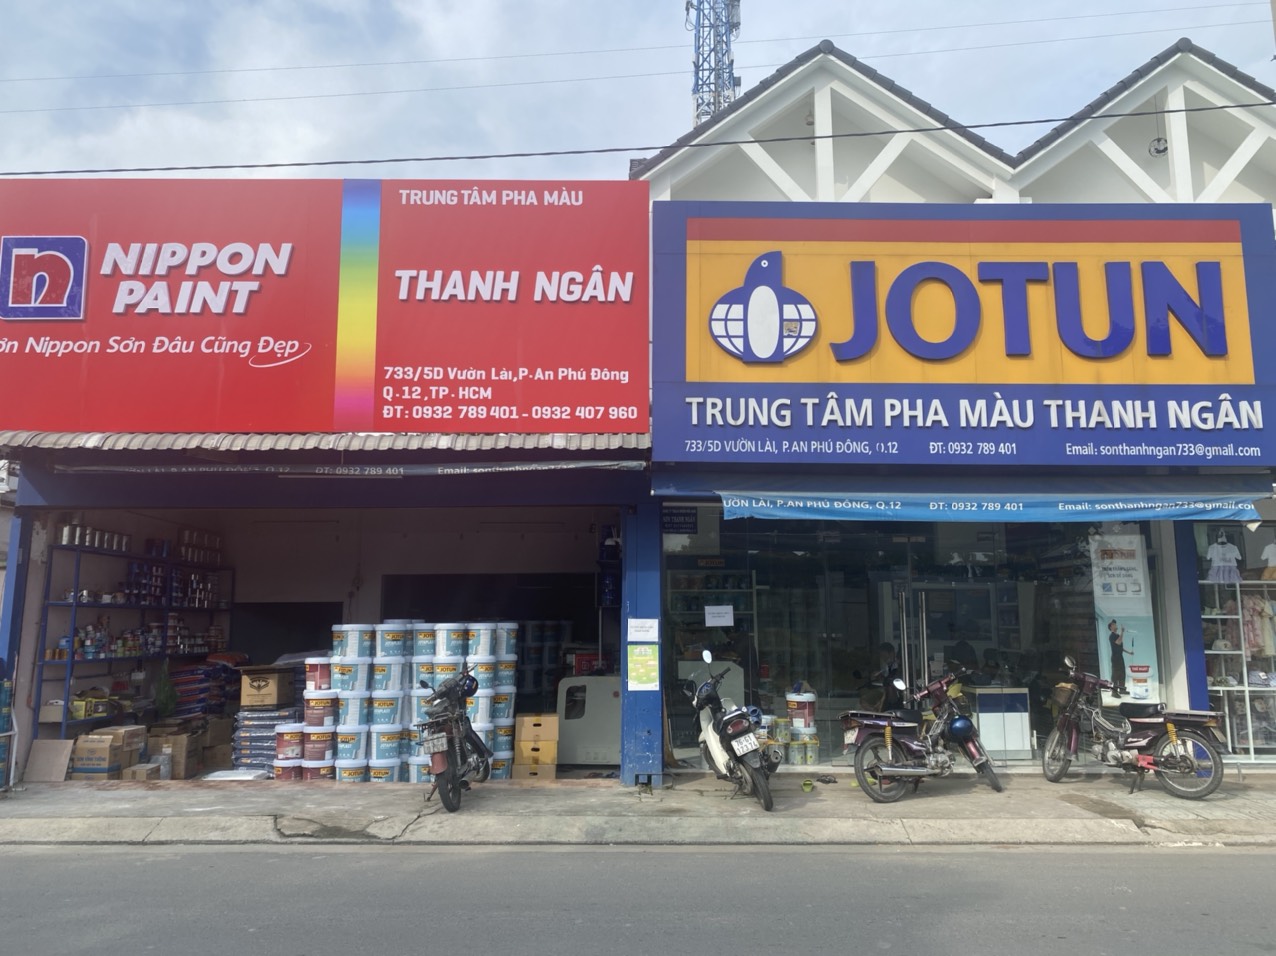 Top 3 đại lý bán sơn uy tín tại Hồ Chí Minh